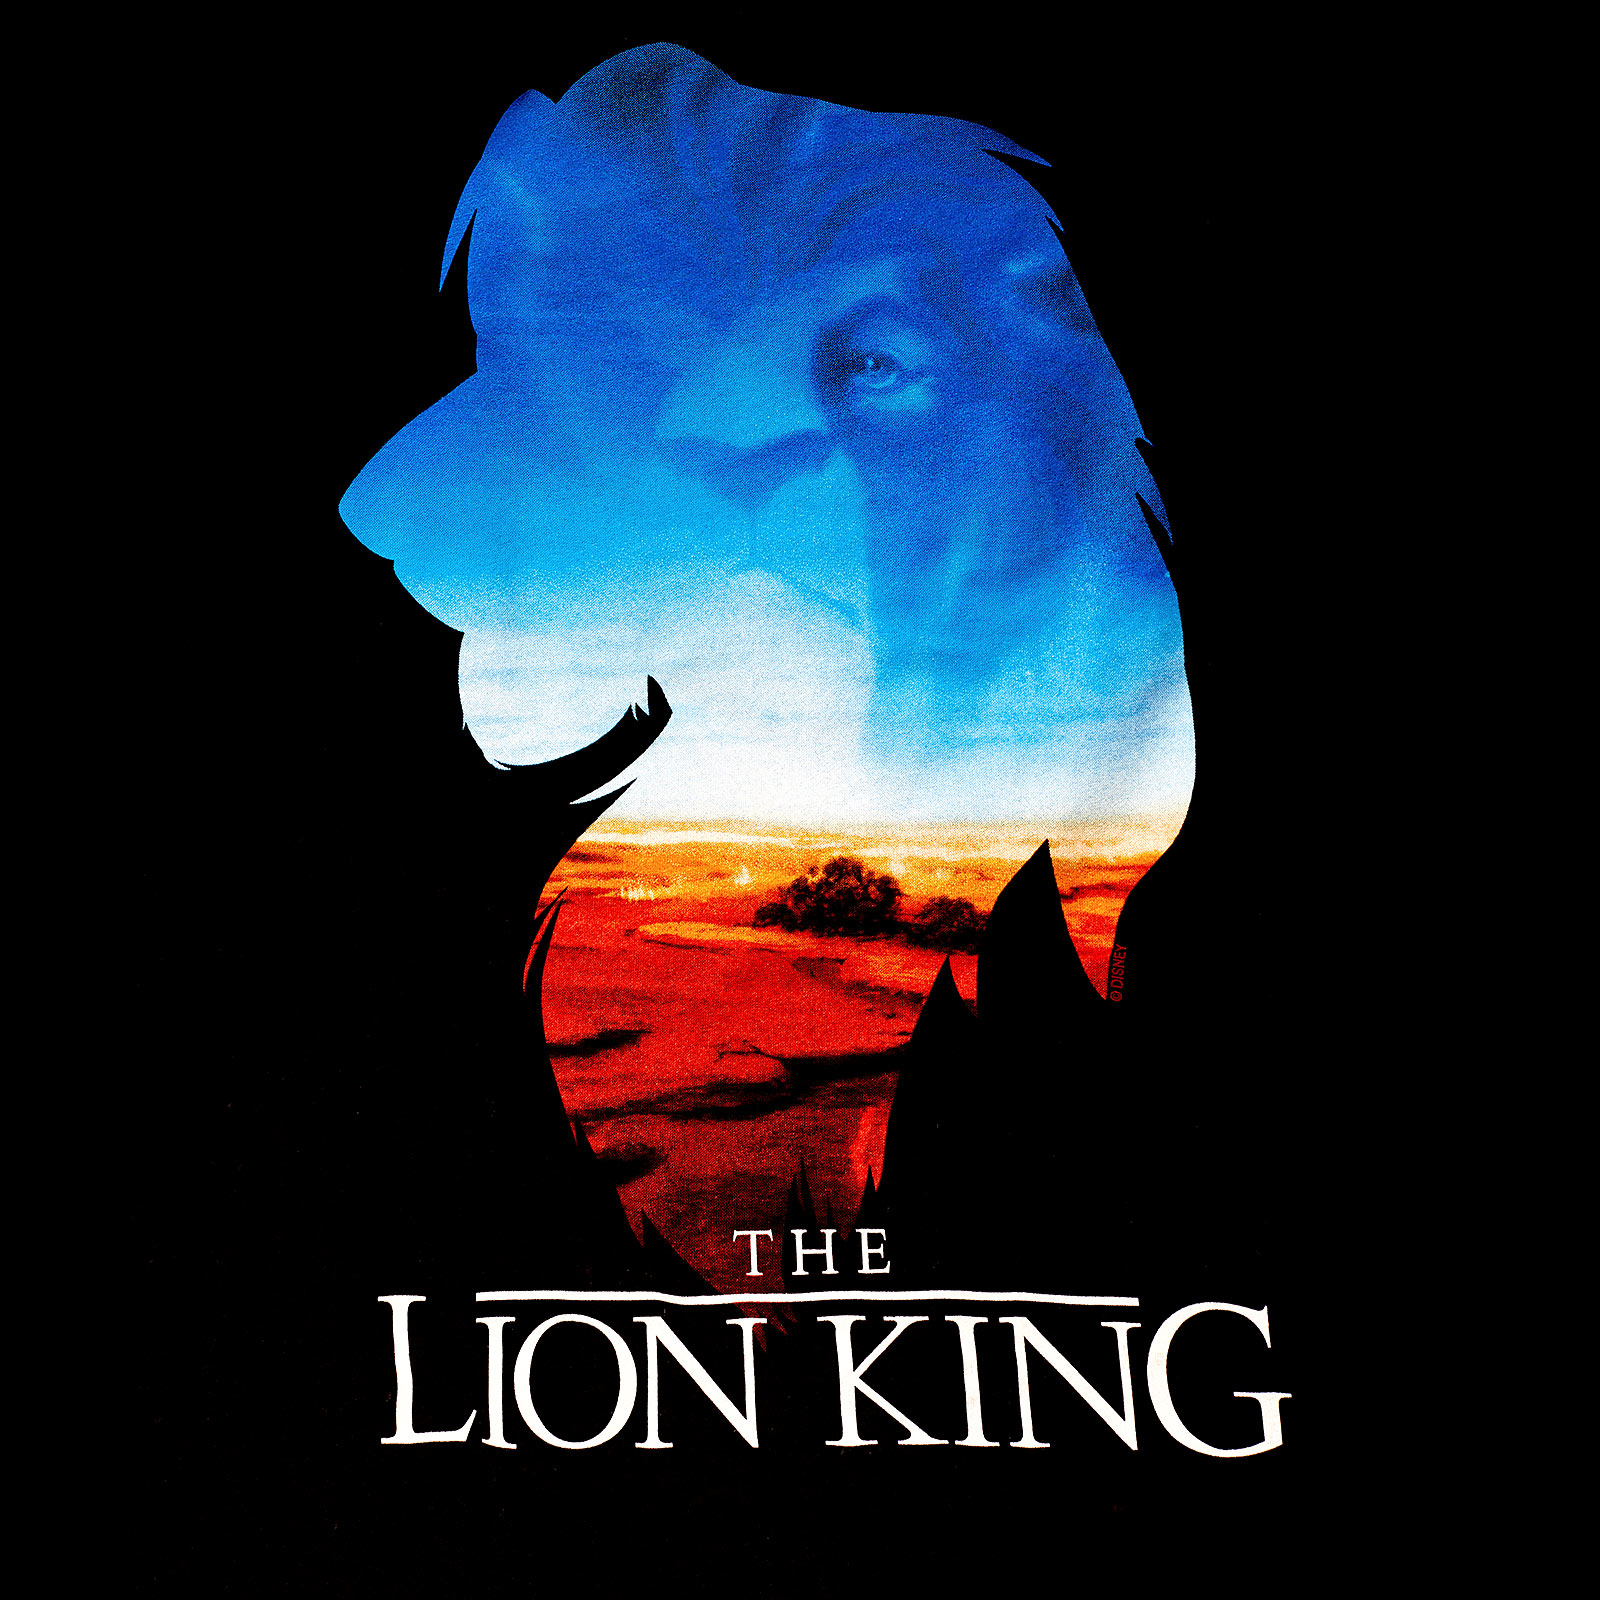 Le Roi Lion - T-shirt femme ample Kings World